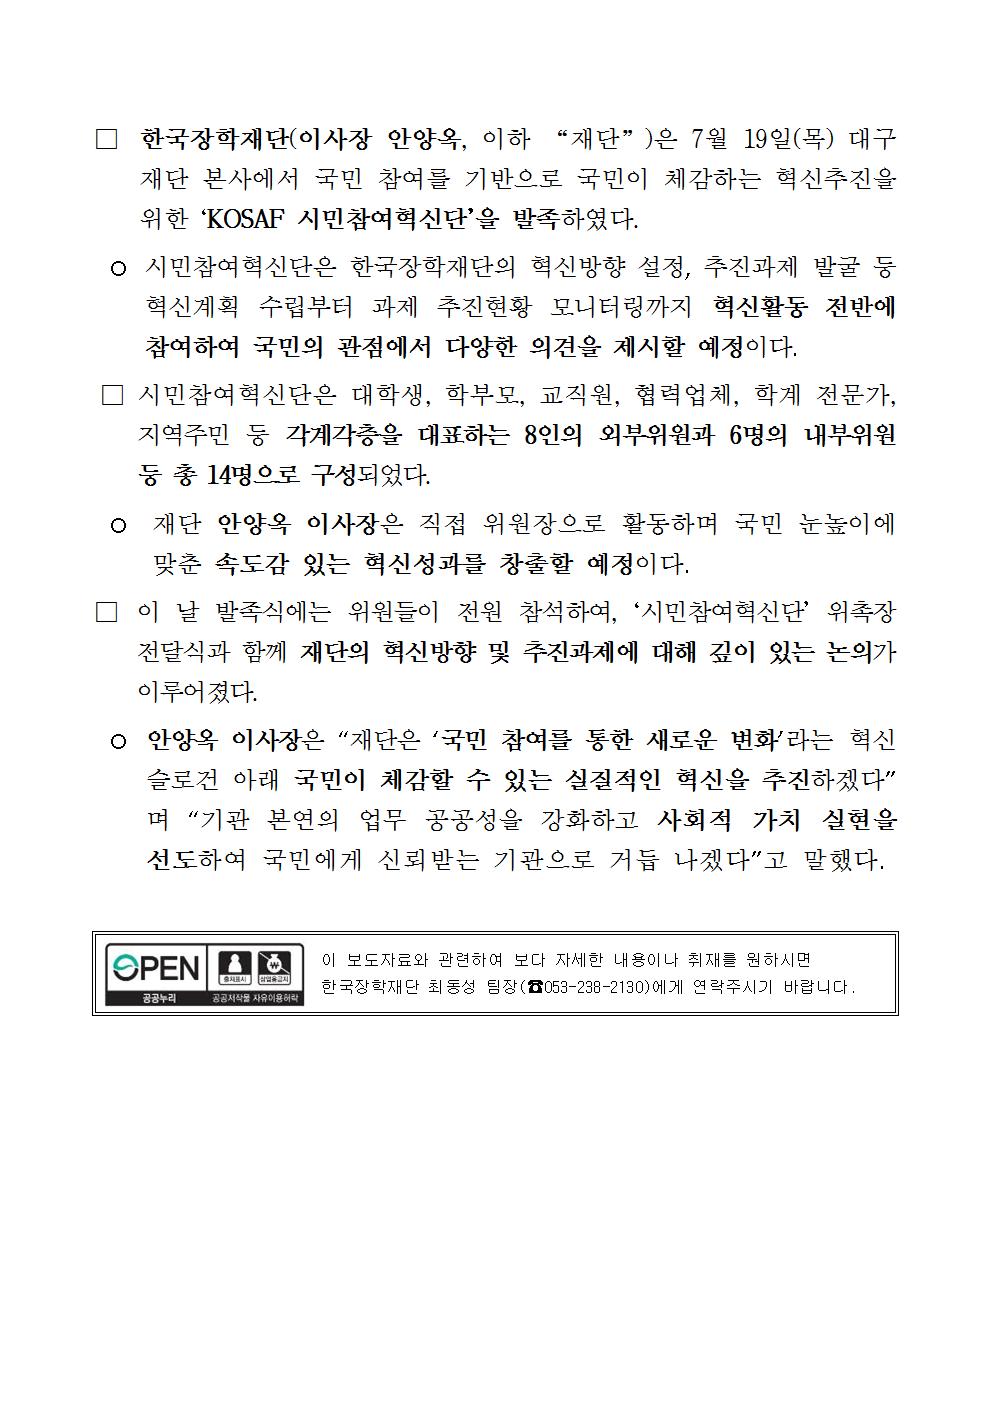 07-19(목)[보도자료] 한국장학재단, 시민참여혁신단 발족002.jpg